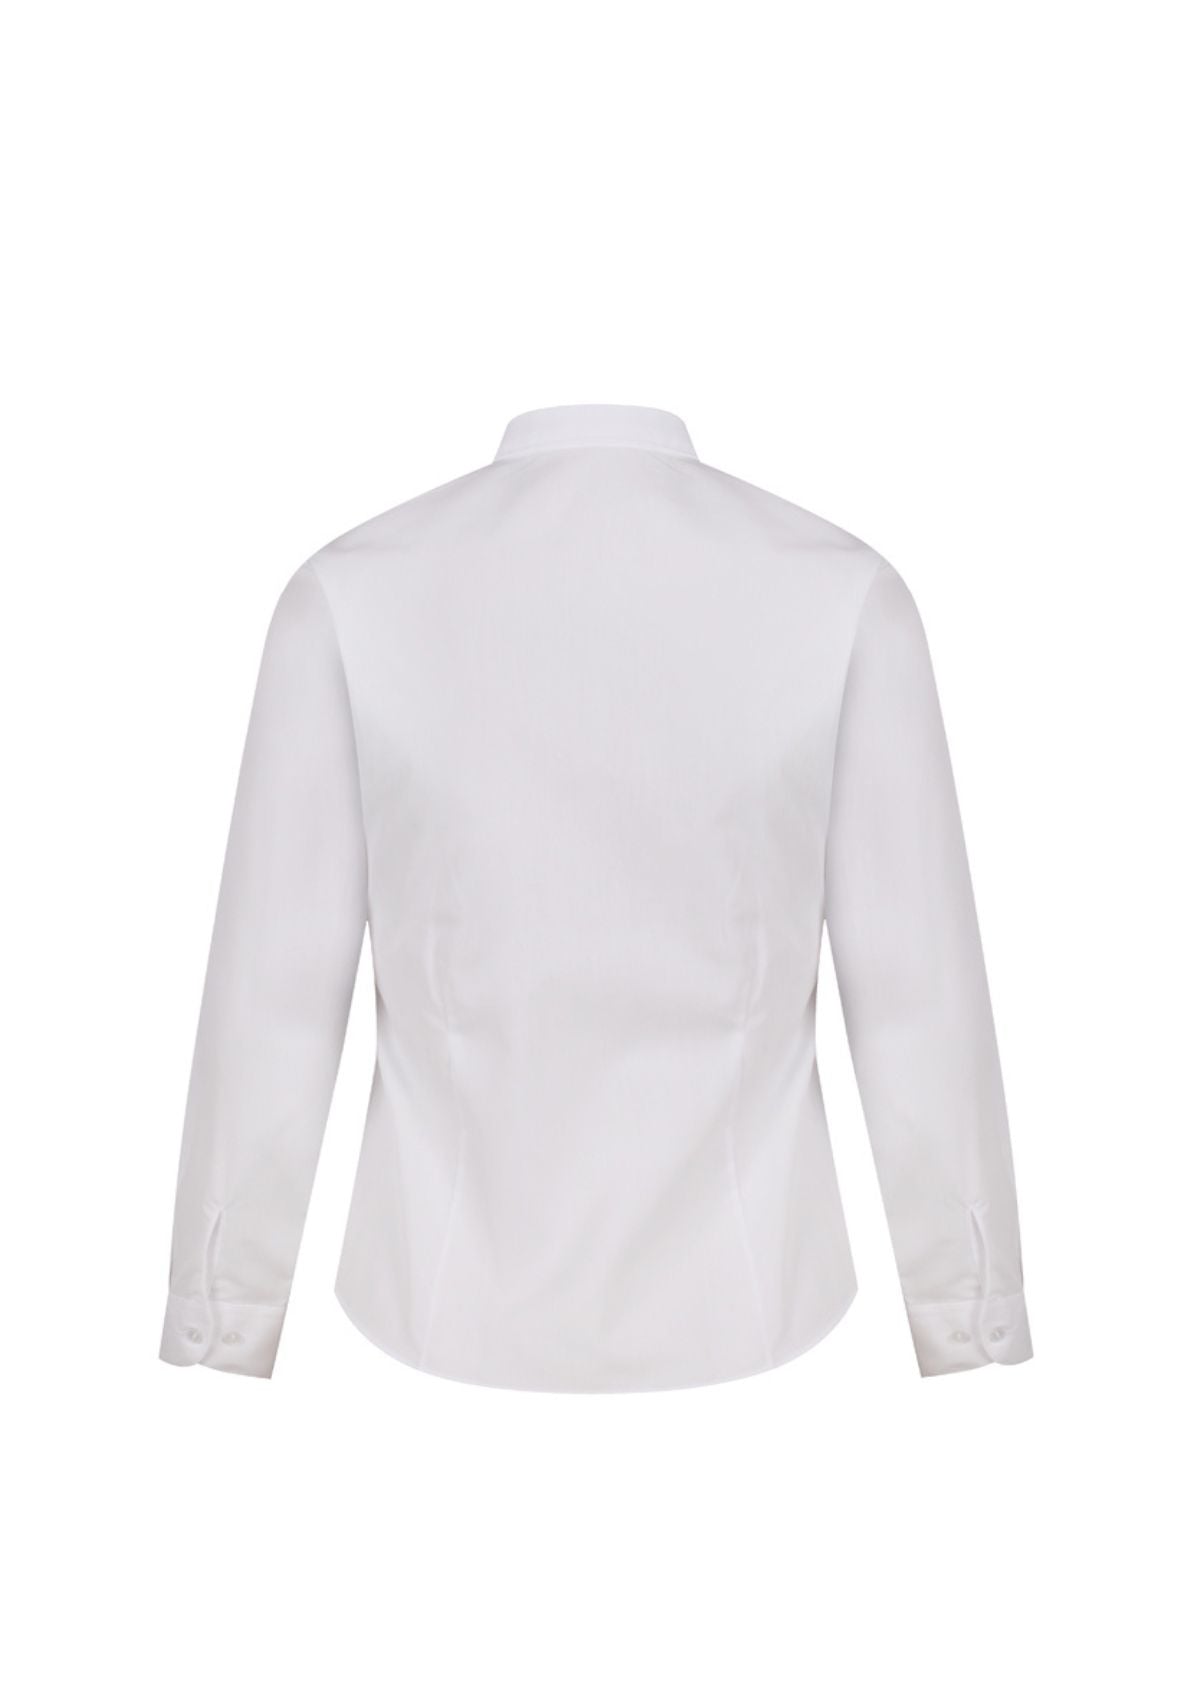 1880 Club White Shirt back